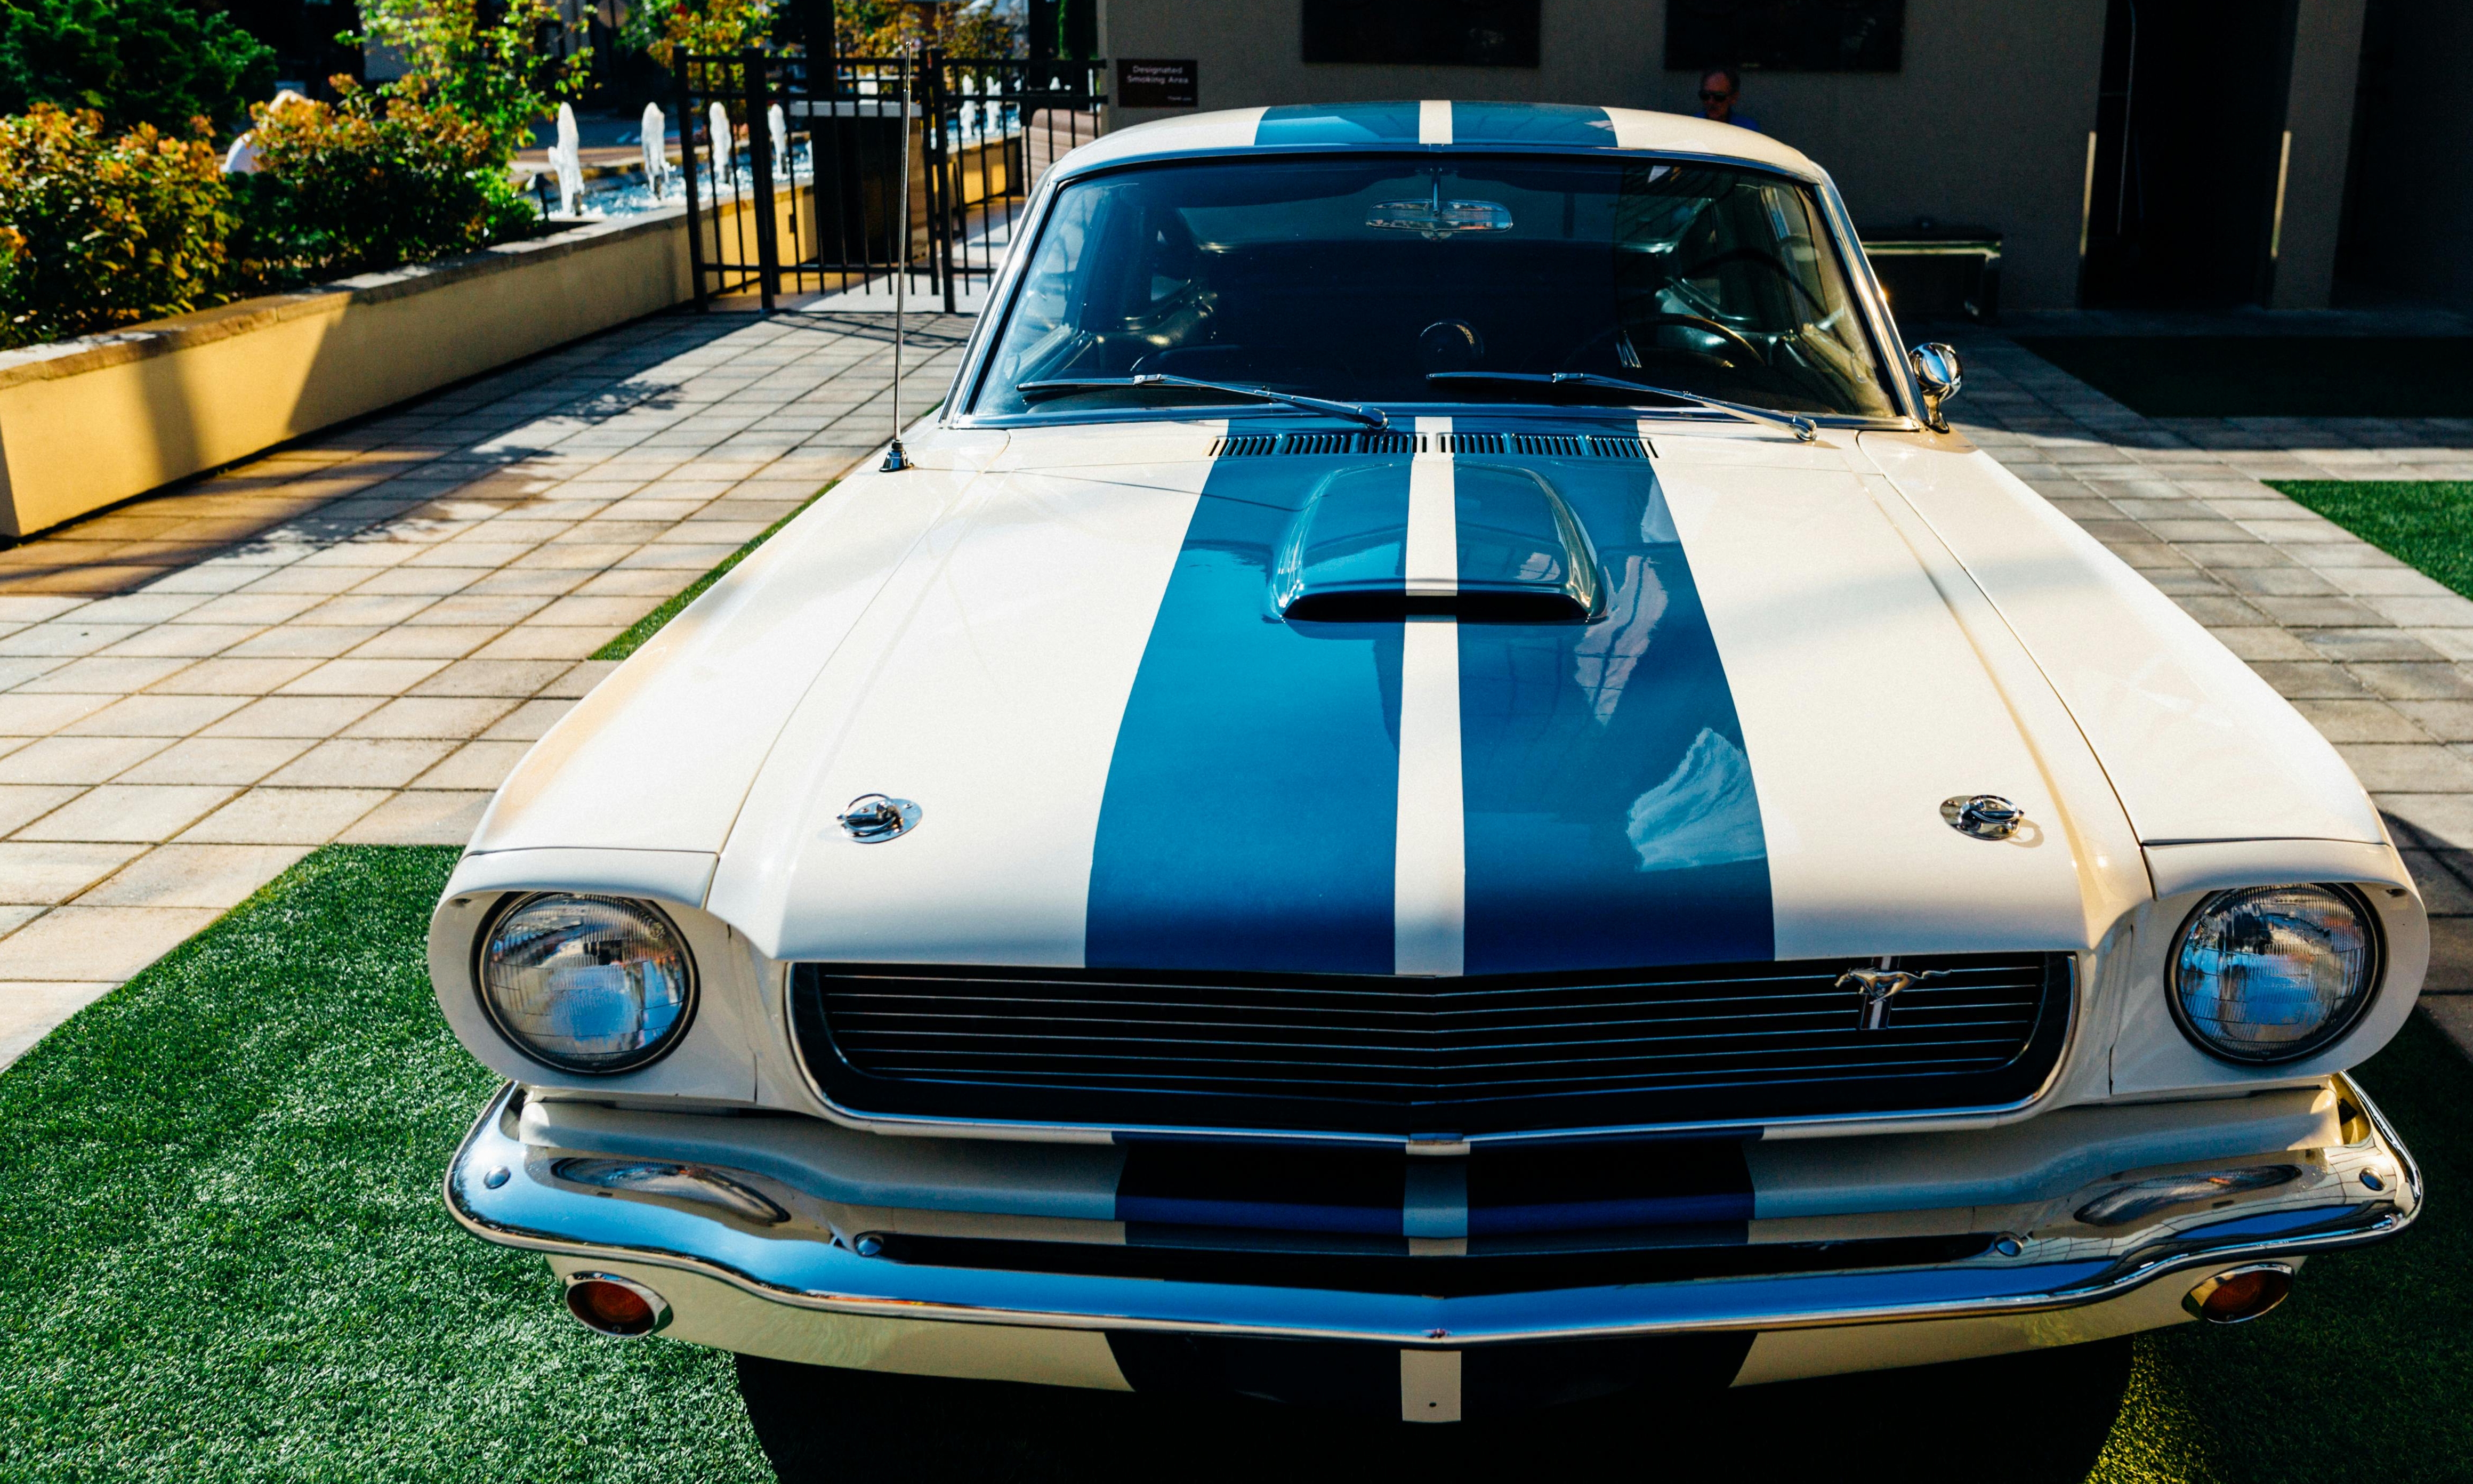 El Mustang restaurado simboliza el trabajo duro y la conexión renovada | Fuente: Pexels